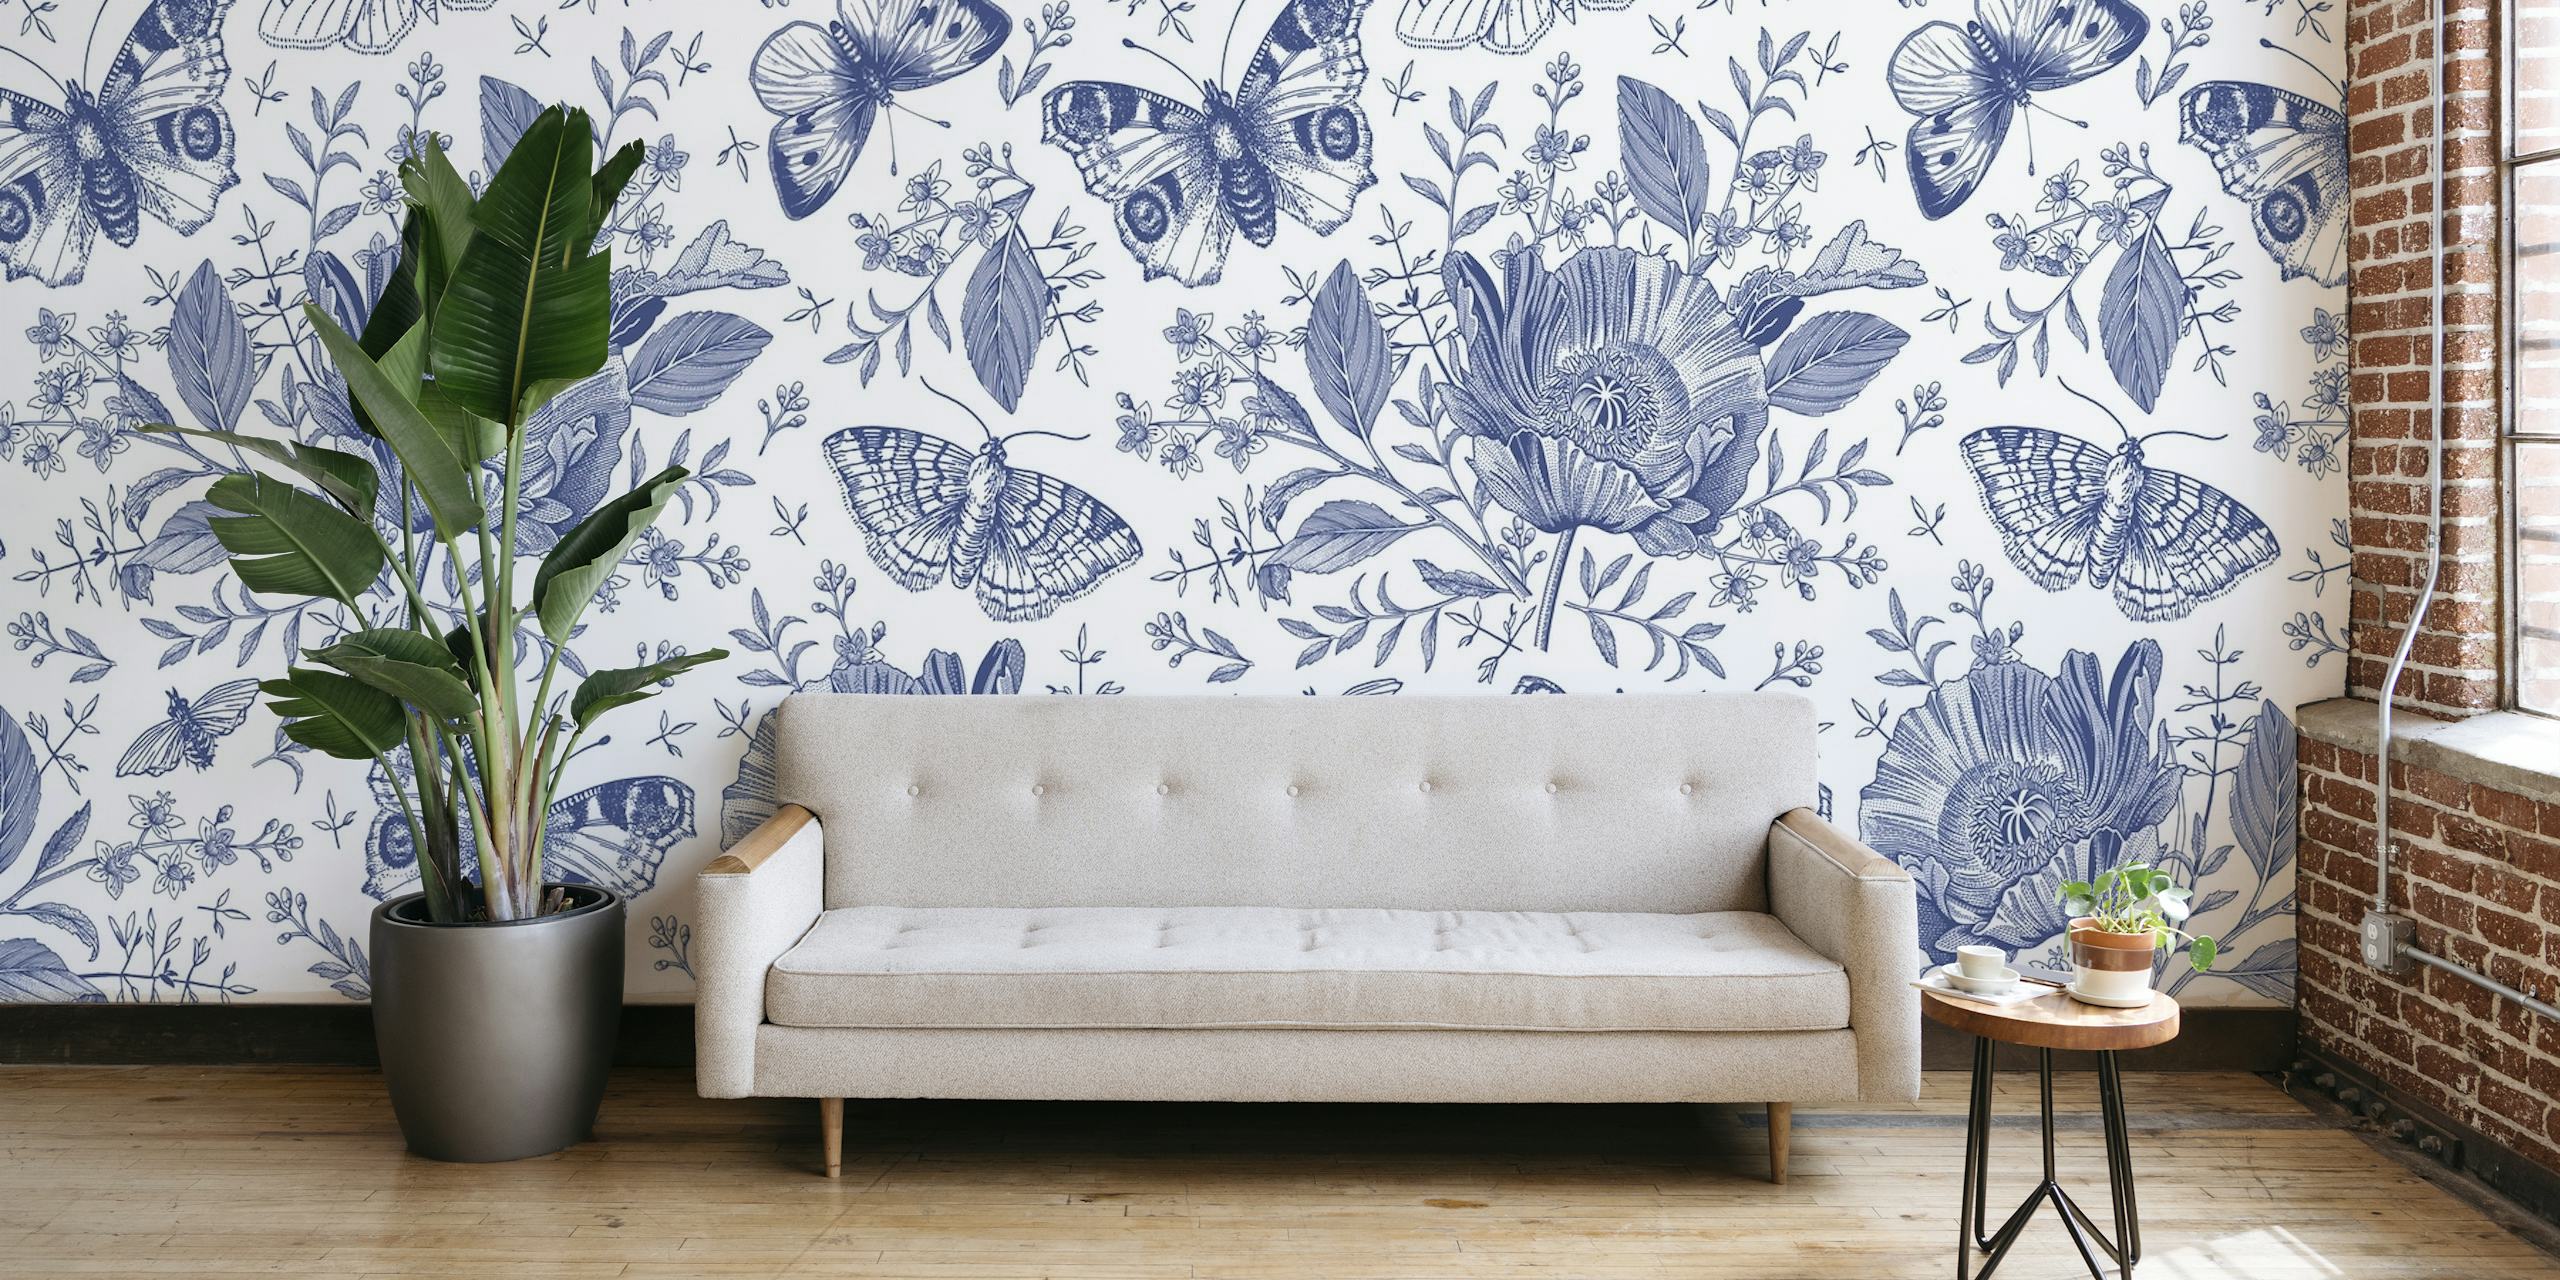 Blauwe botanische en vlinderpatroon muurschildering van happywall.com